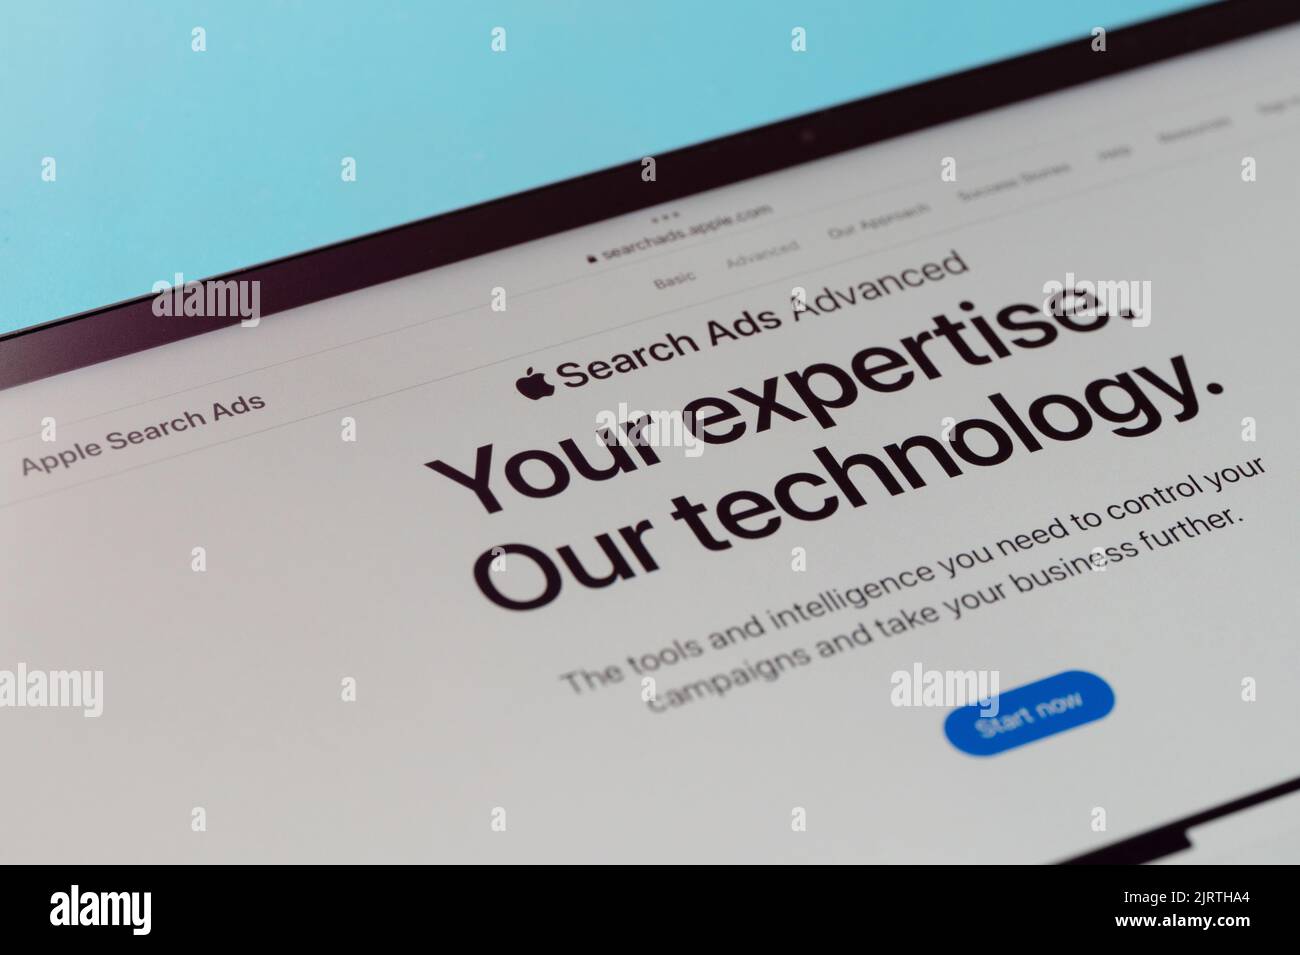 New york, USA - 20 agosto 2022: Effettuare una nuova ricerca Apple Annunci campagna avanzata sullo schermo del tablet macro vista ravvicinata su sfondo blu Foto Stock